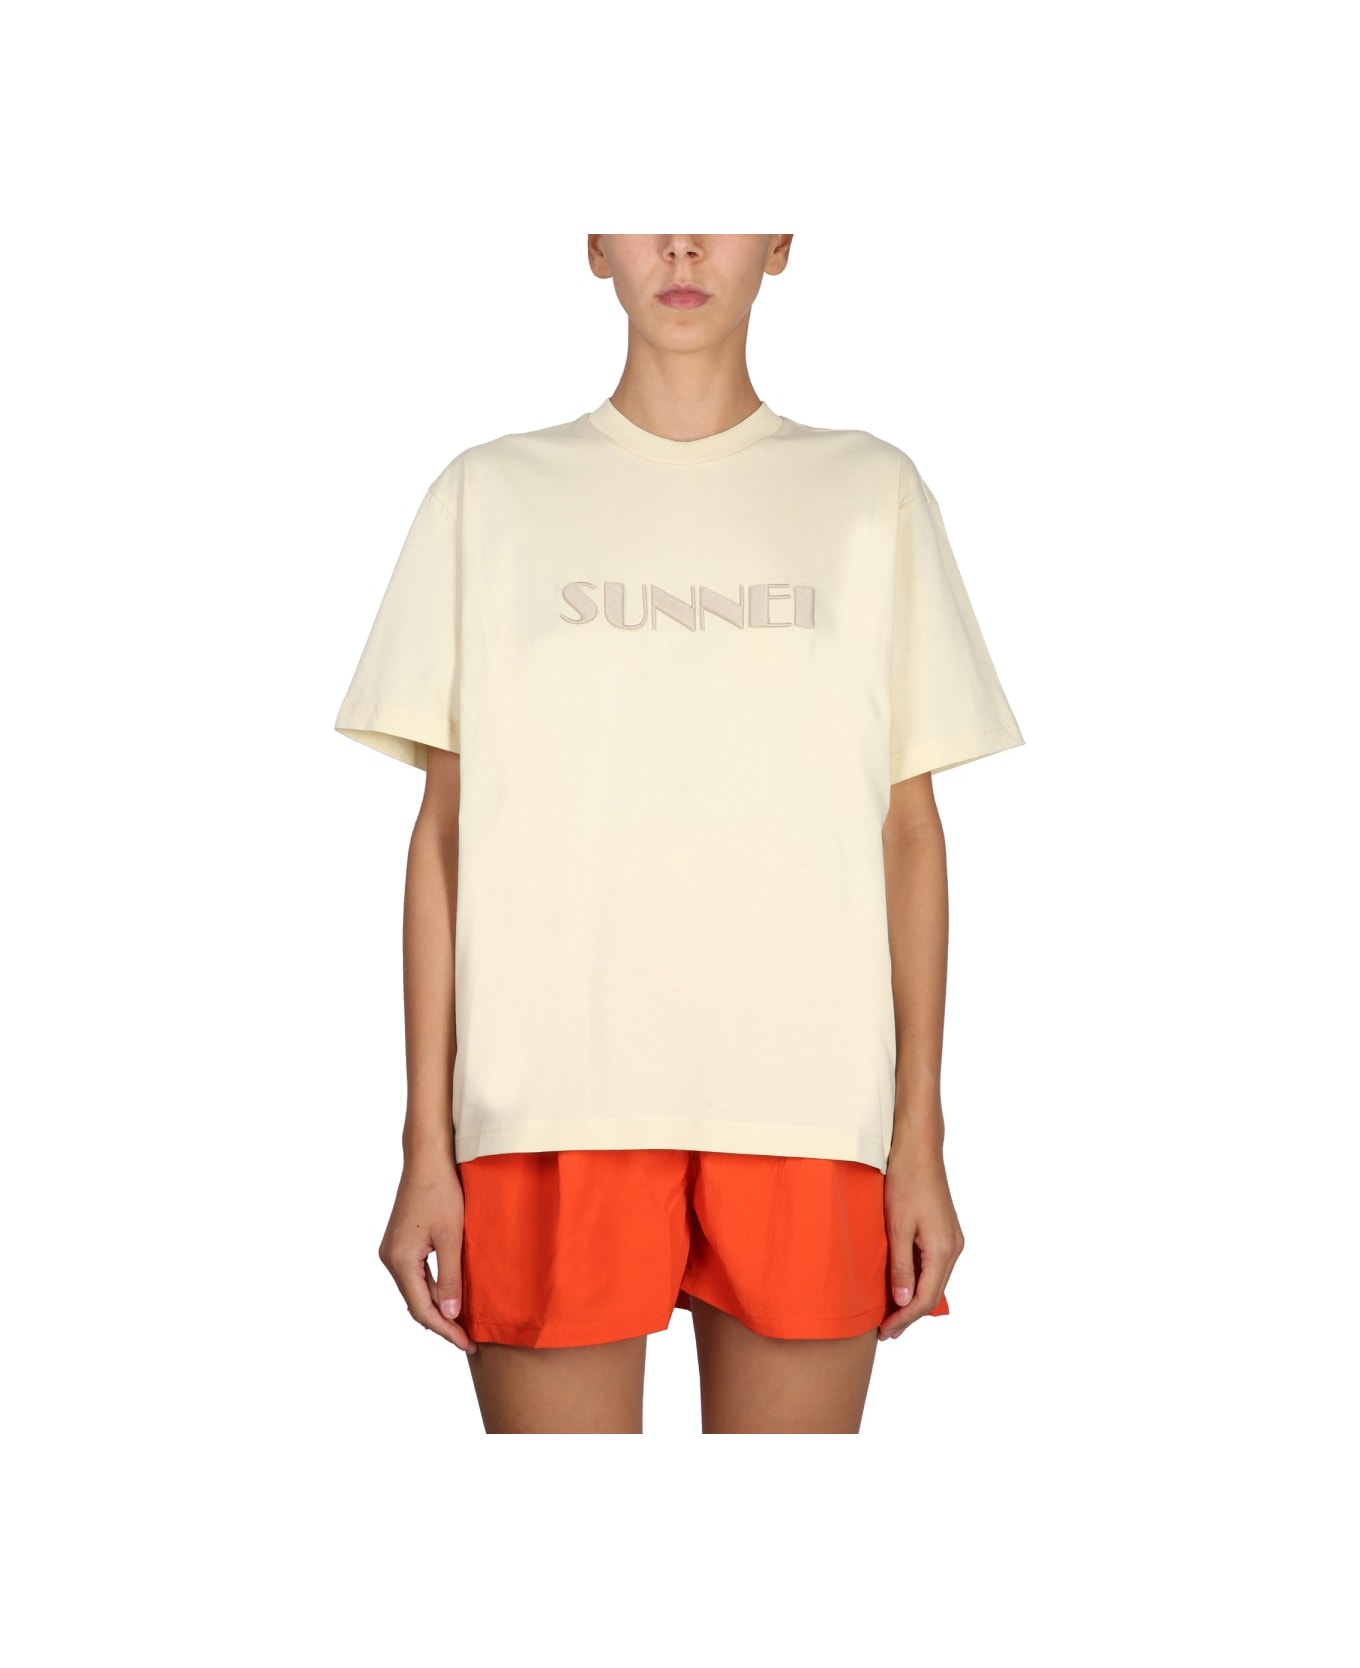 Sunnei Crewneck T-shirt - BEIGE